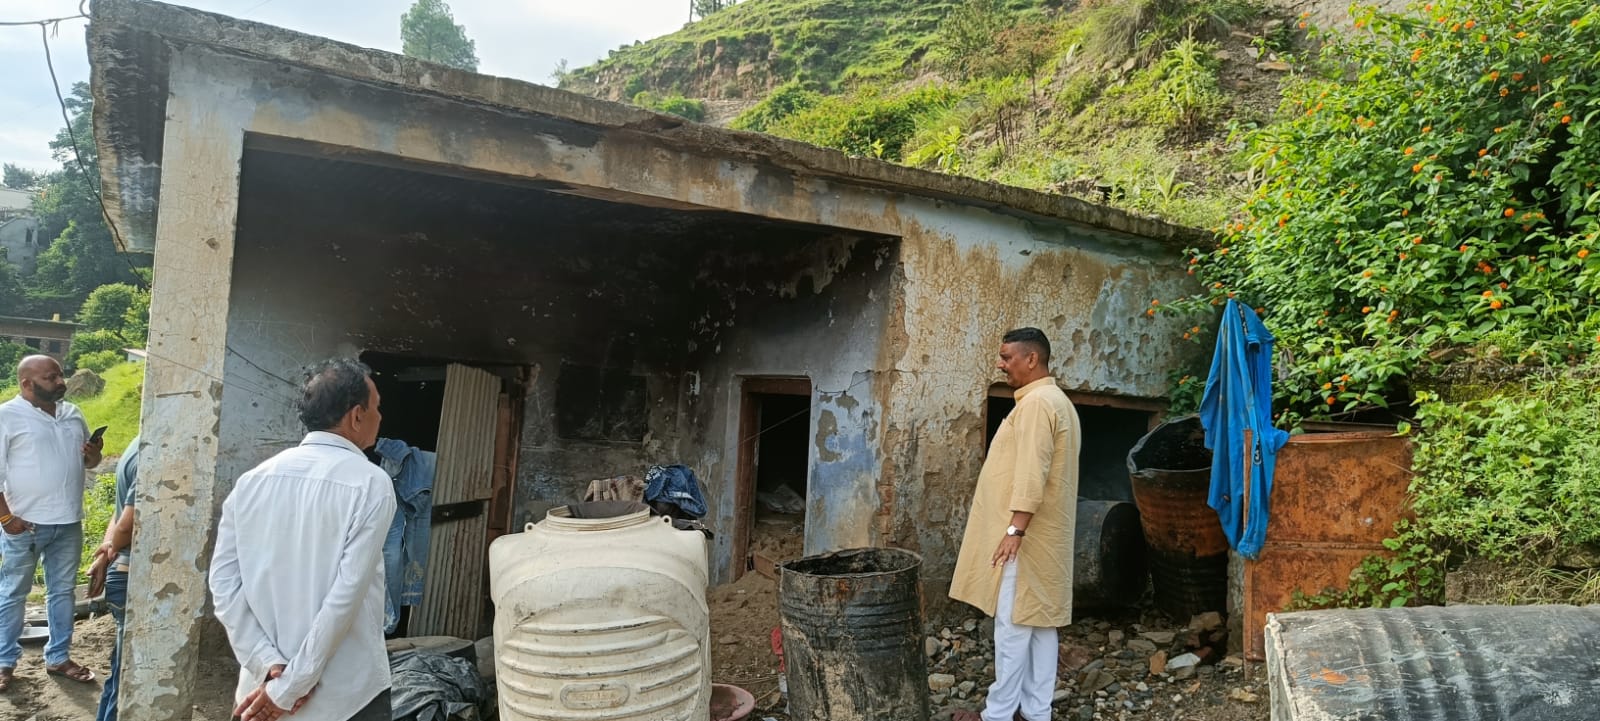 पूर्व दर्जा मंत्री कर्नाटक ने किया घुरसो ग्राम का दौरा, क्षतिग्रस्त पंचायत घर इत्यादि के पुनर्निर्माण की उठाई मांग